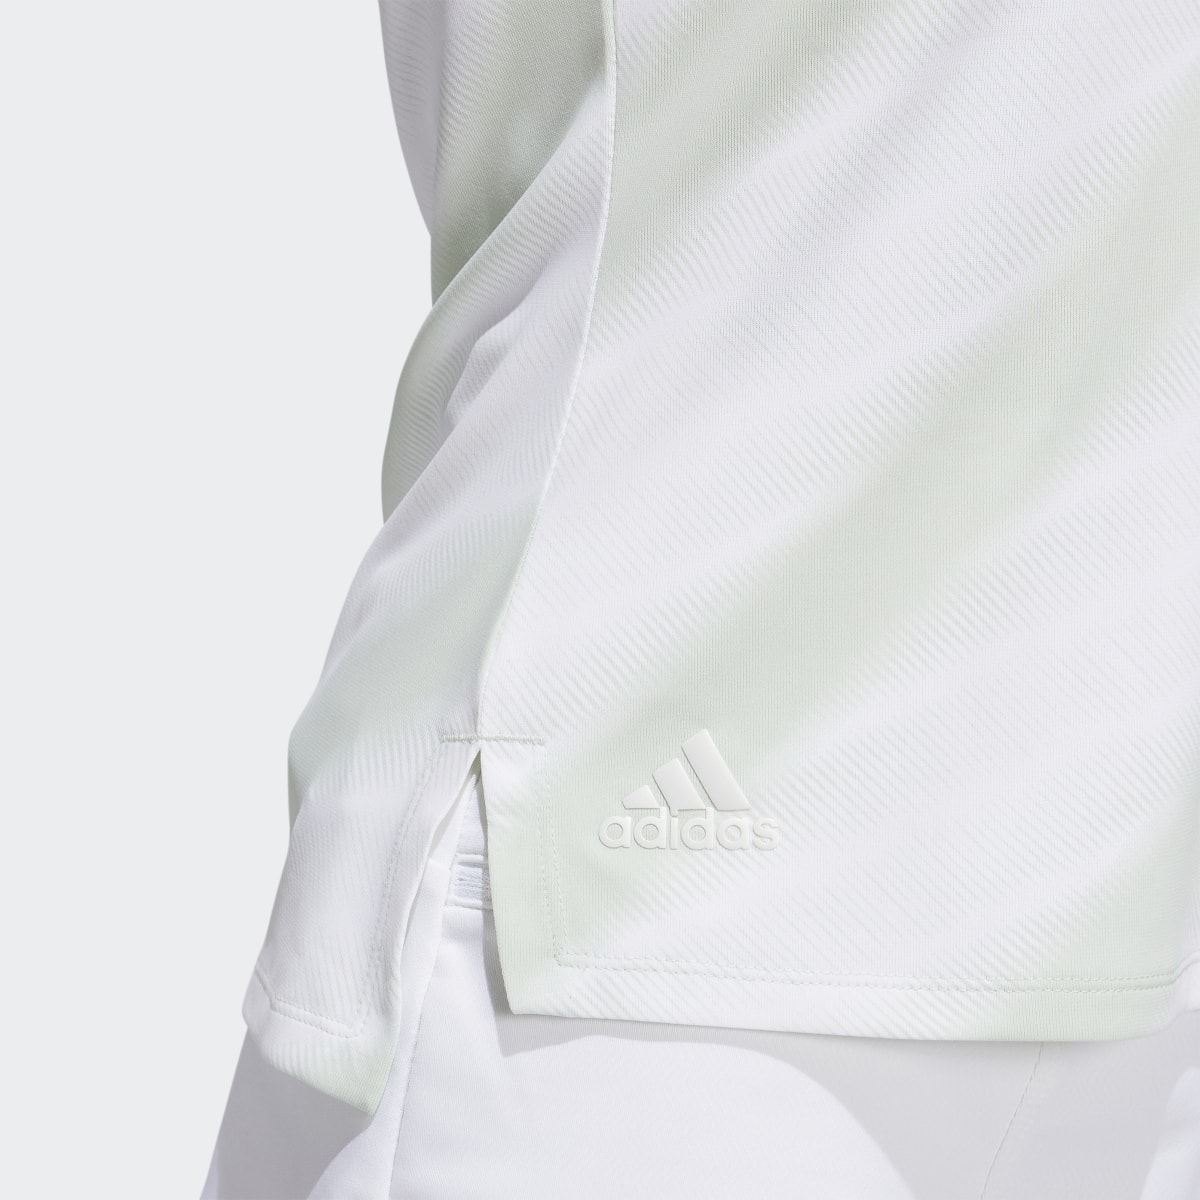 Adidas HEAT.RDY Golf Polo Shirt. 7